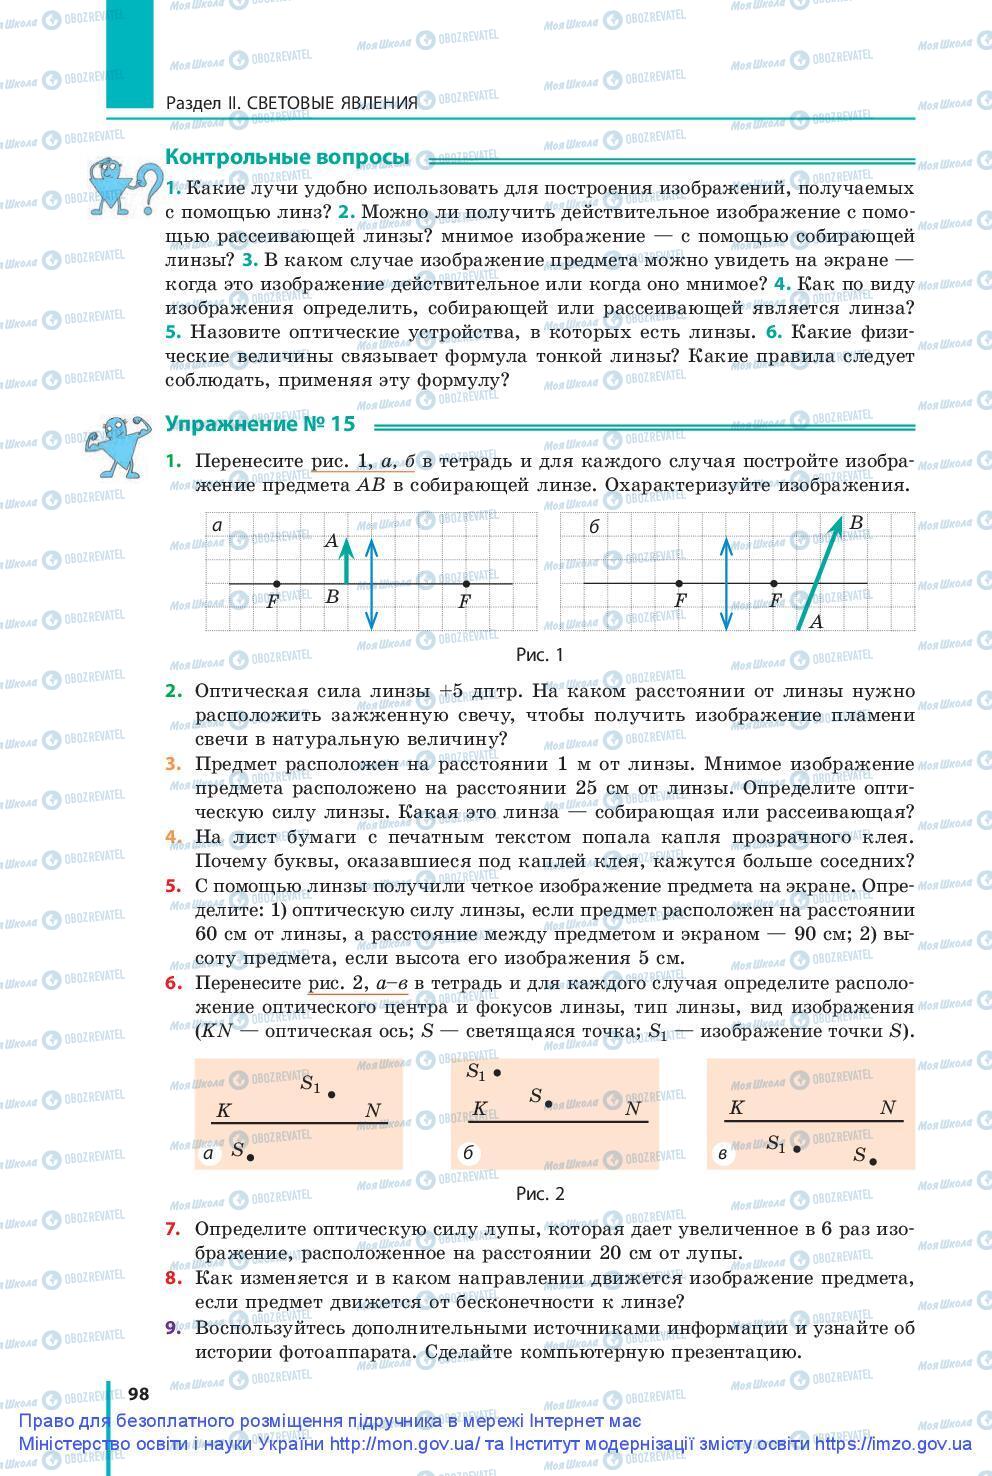 Підручники Фізика 9 клас сторінка 98